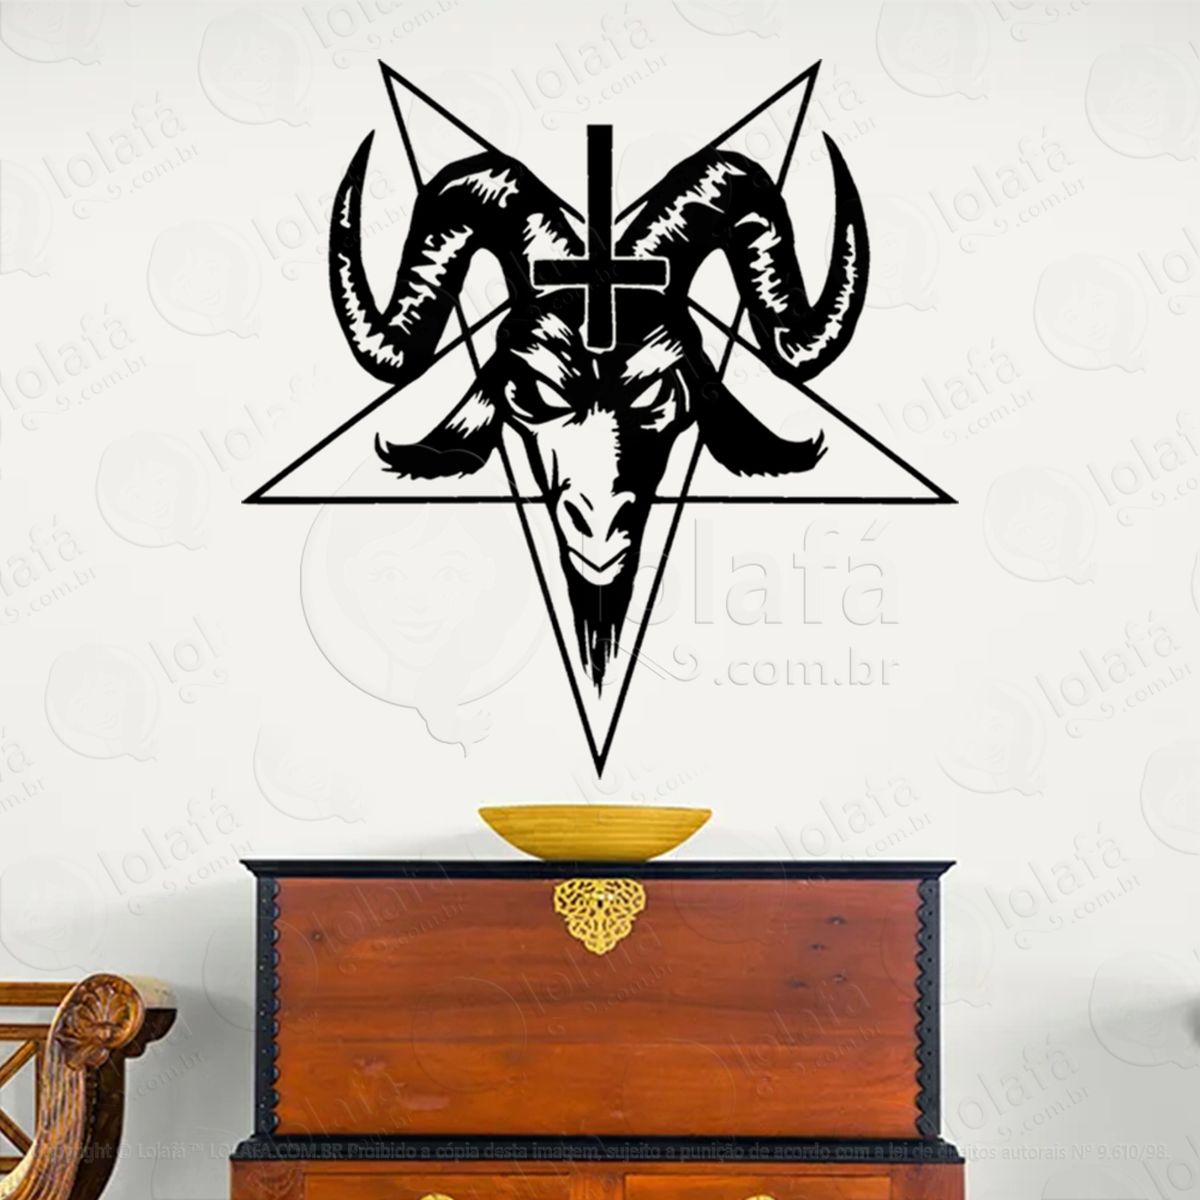 cabeça de baphomet com cruz head with cross adesivo de parede decorativo para casa, sala, quarto, vidro e altar ocultista - mod:239